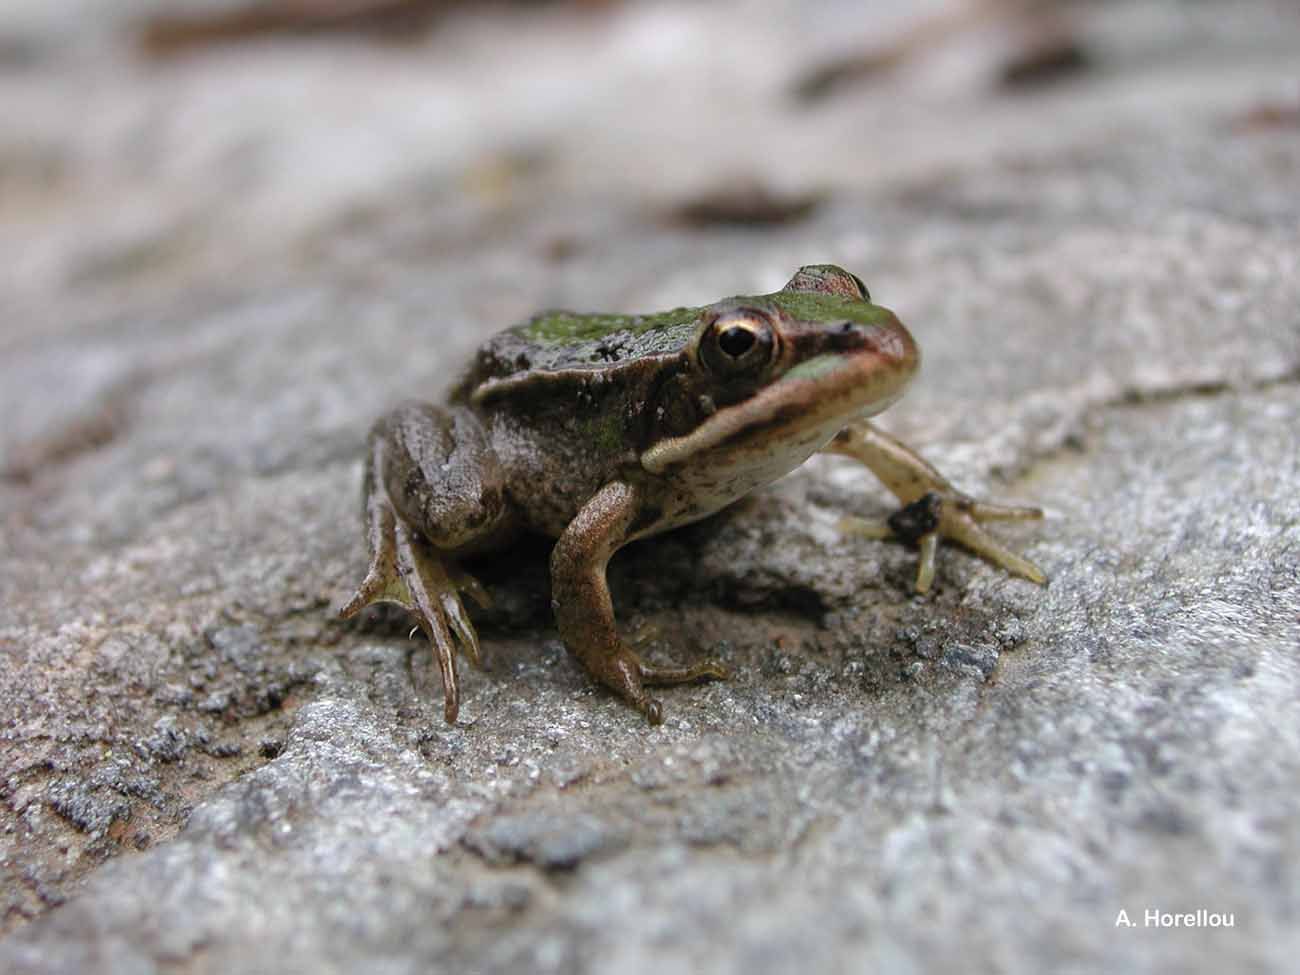 Image of Italian Pool Frog